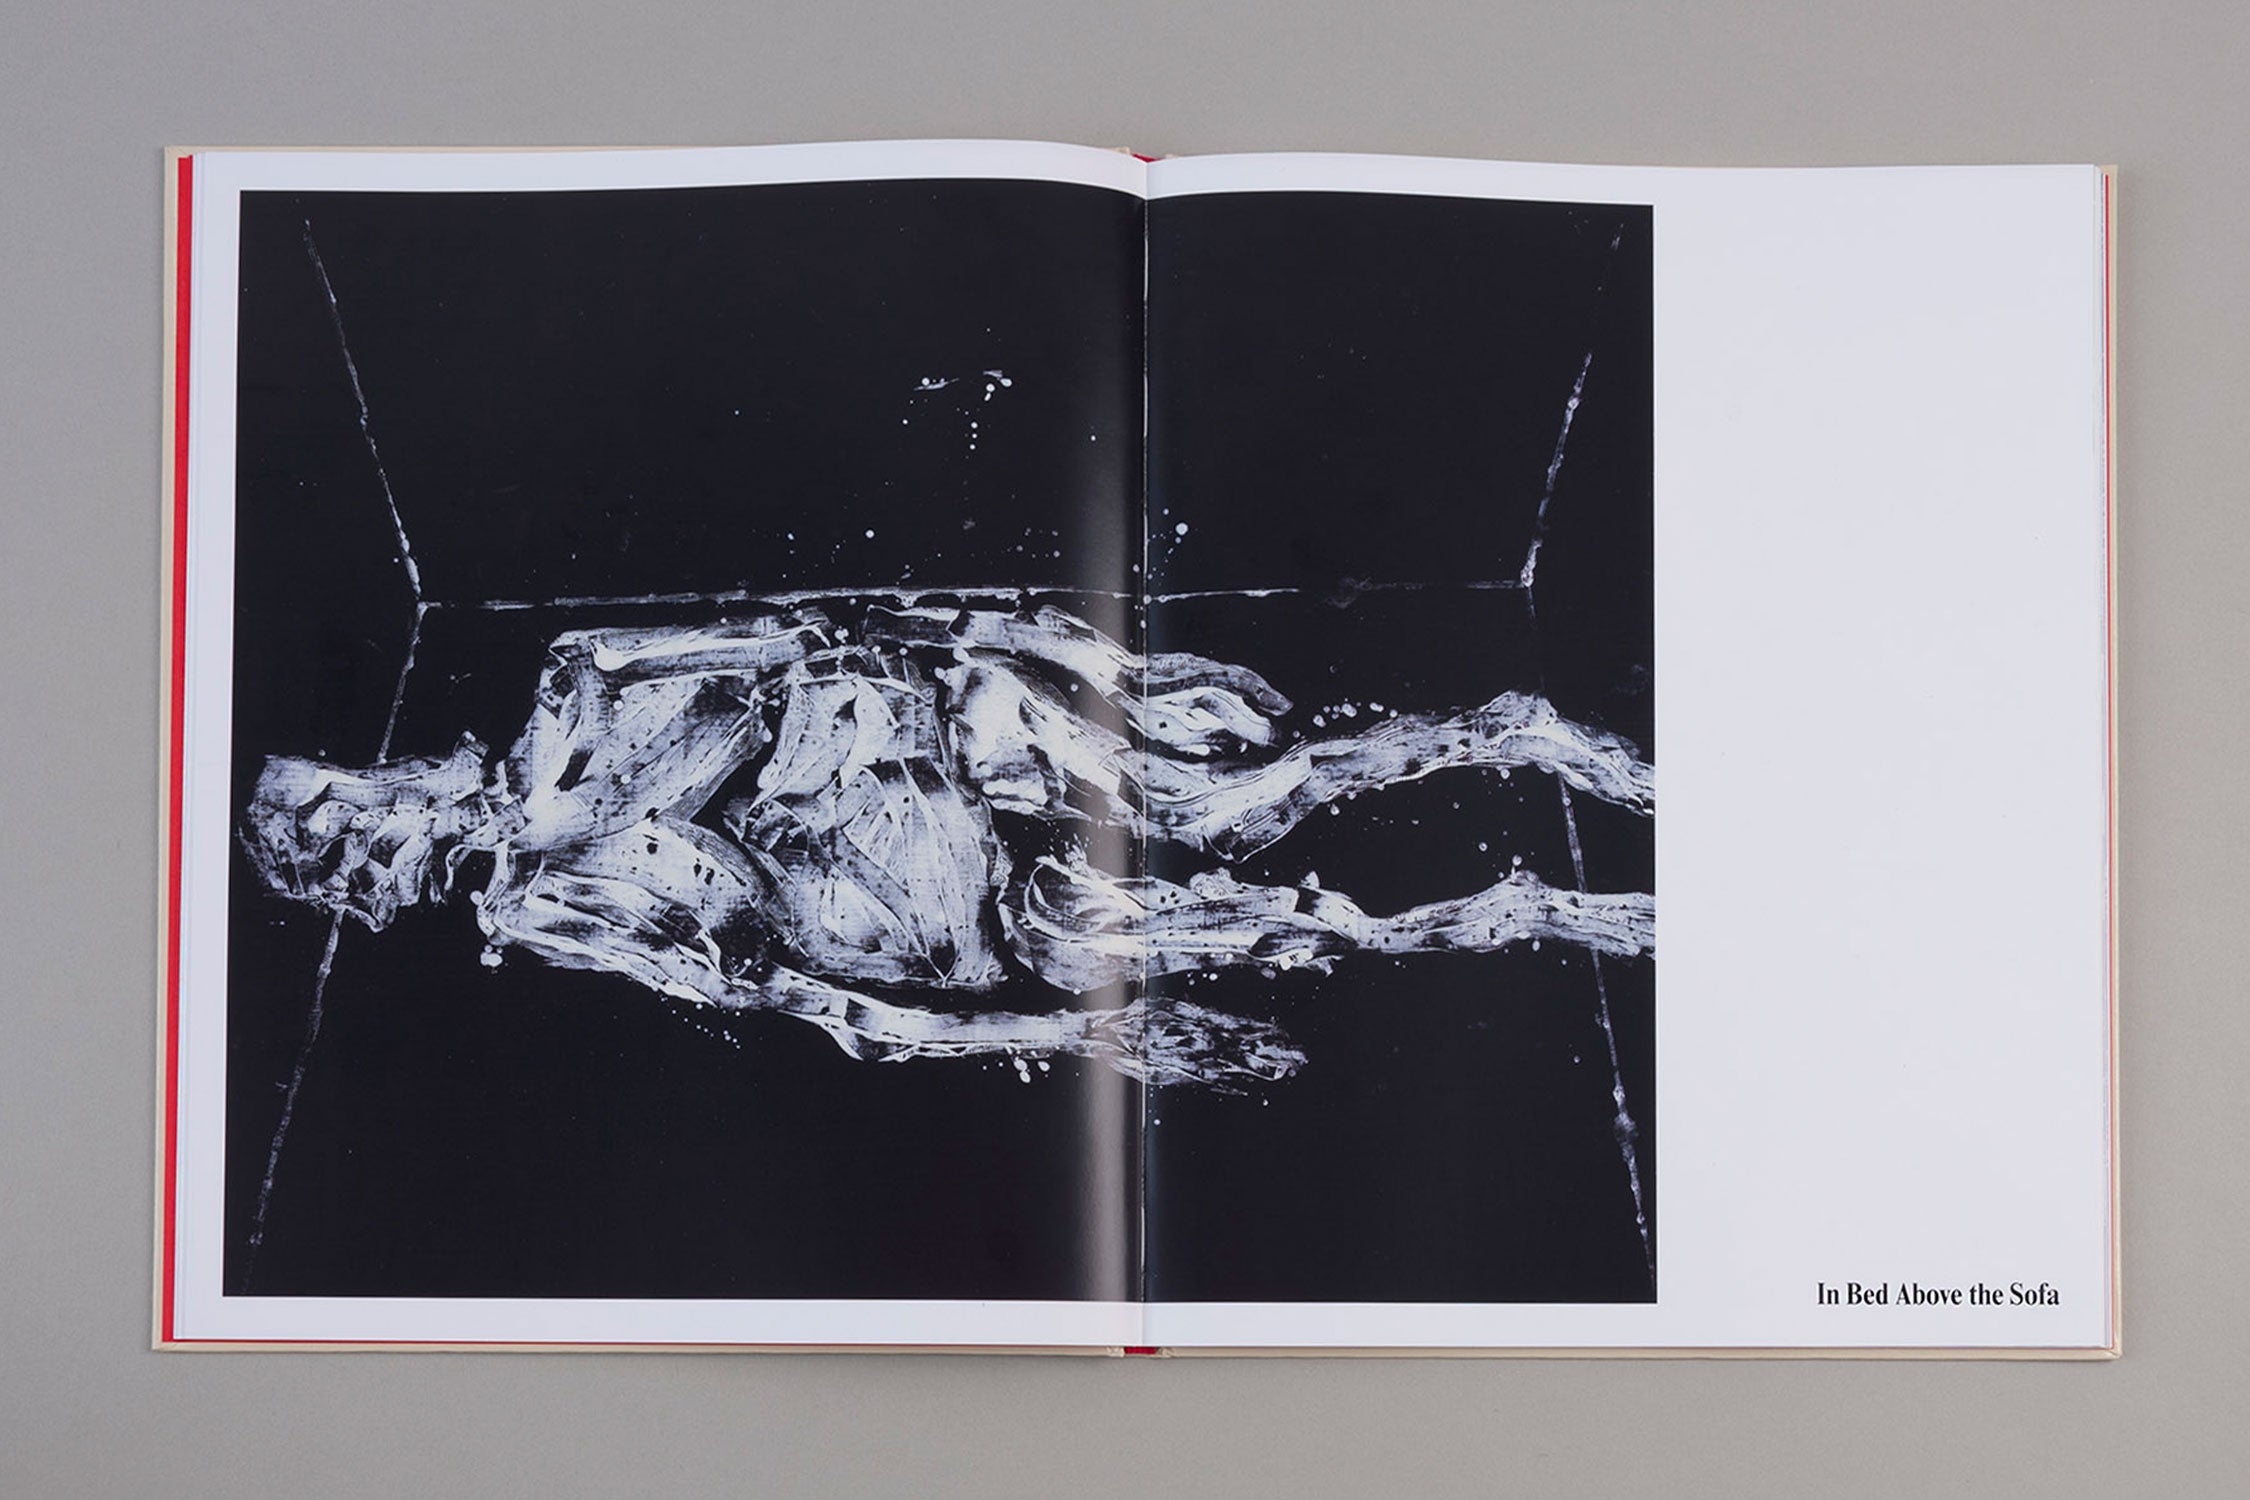 Georg Baselitz ‘Sofa Pictures’ (2022)